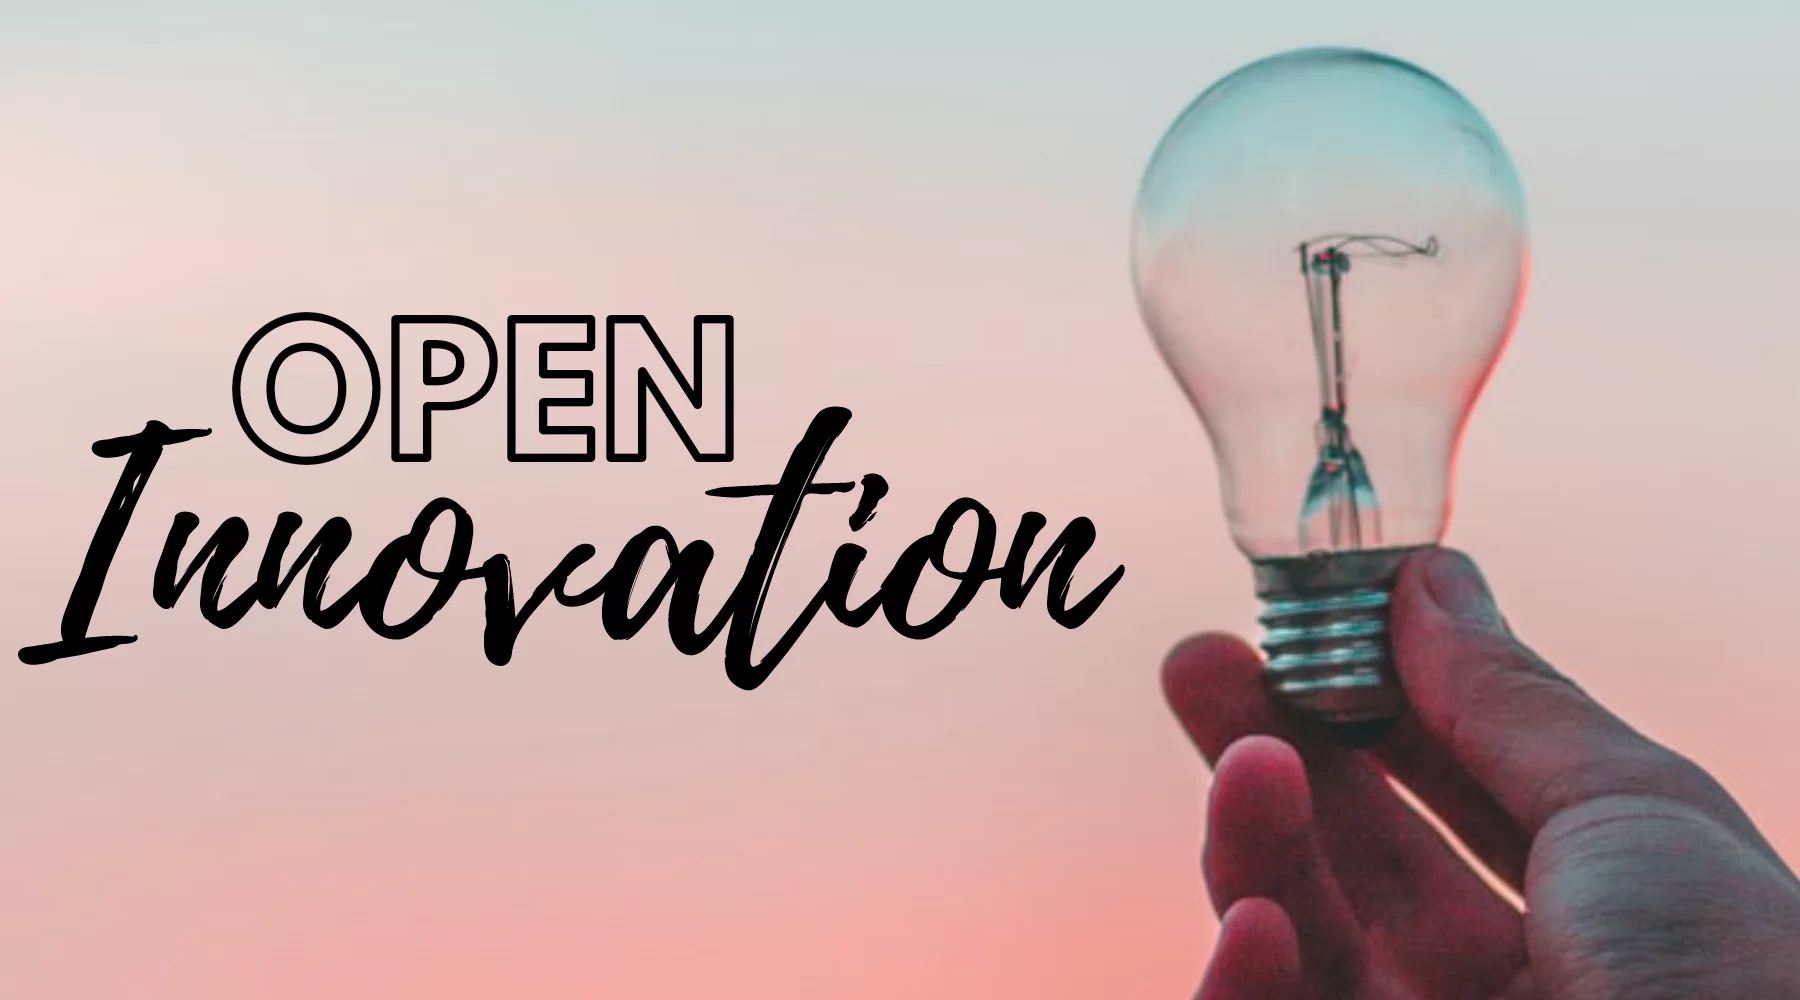 Icona Technology S.p.A. та Xplo S.r.l.: співпраця в ім’я Open Innovation для запуску на ринку «Servicely for Service Hub»